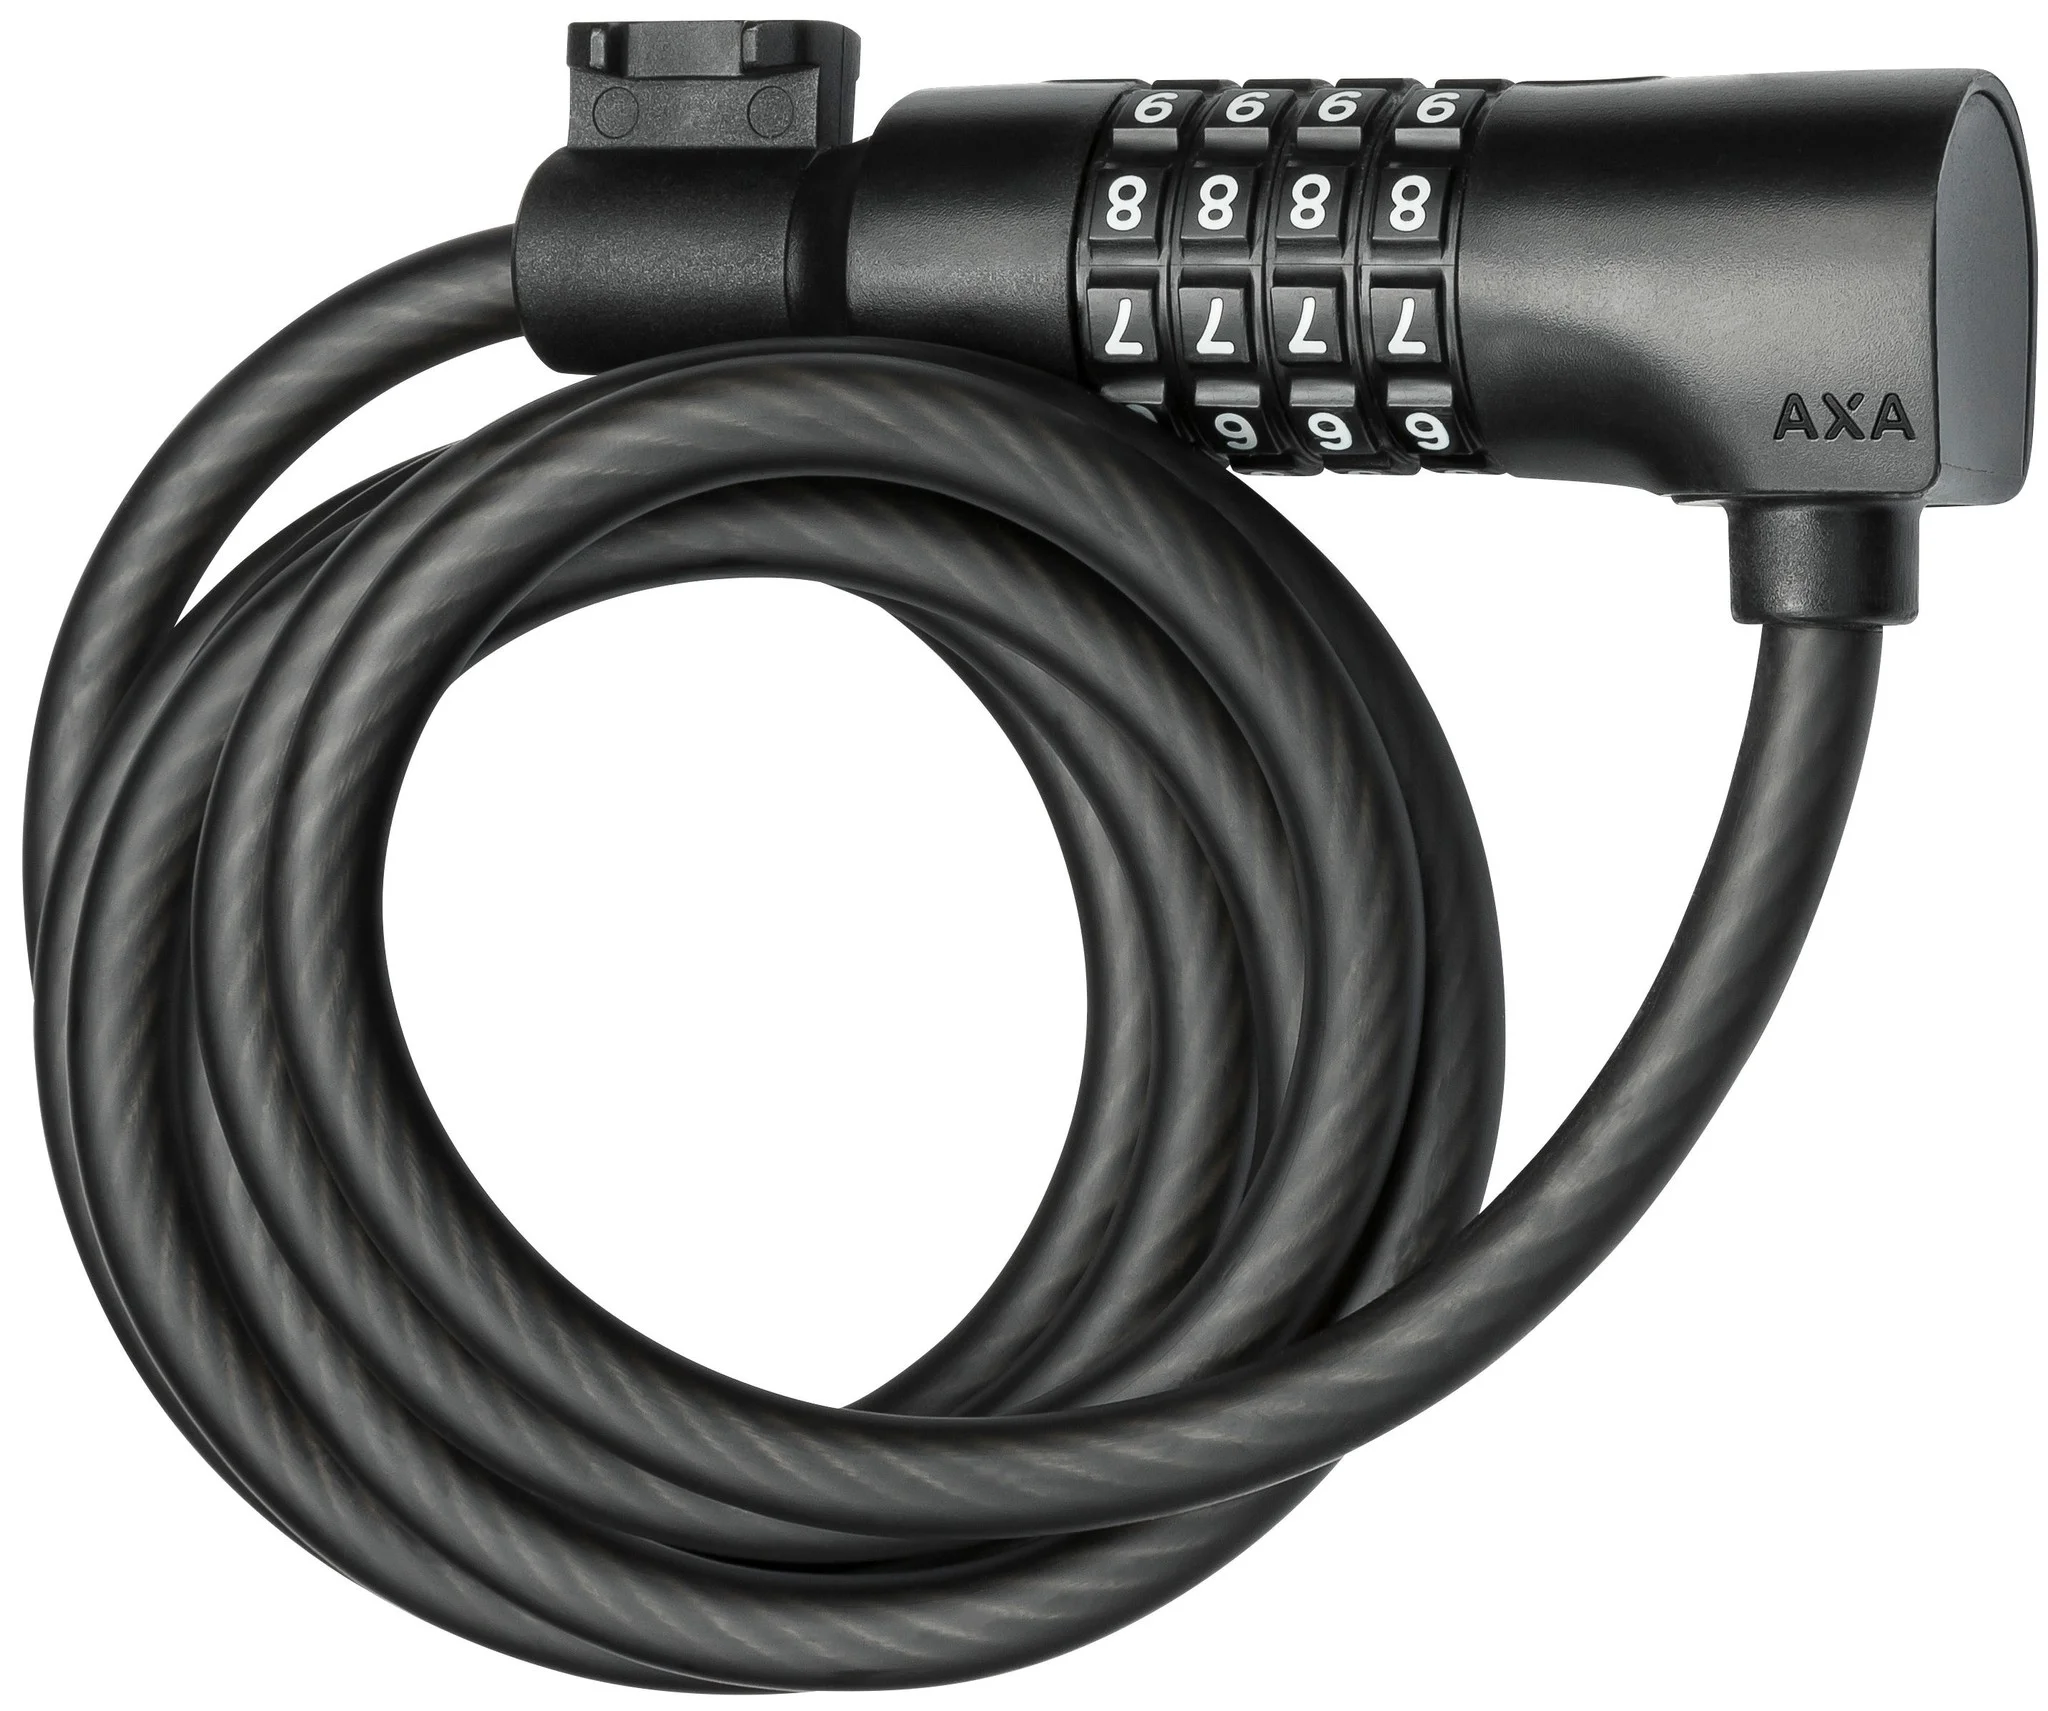 AXA kabelslot Resolute C8 180 Ø8 mm-1800 mm zwart